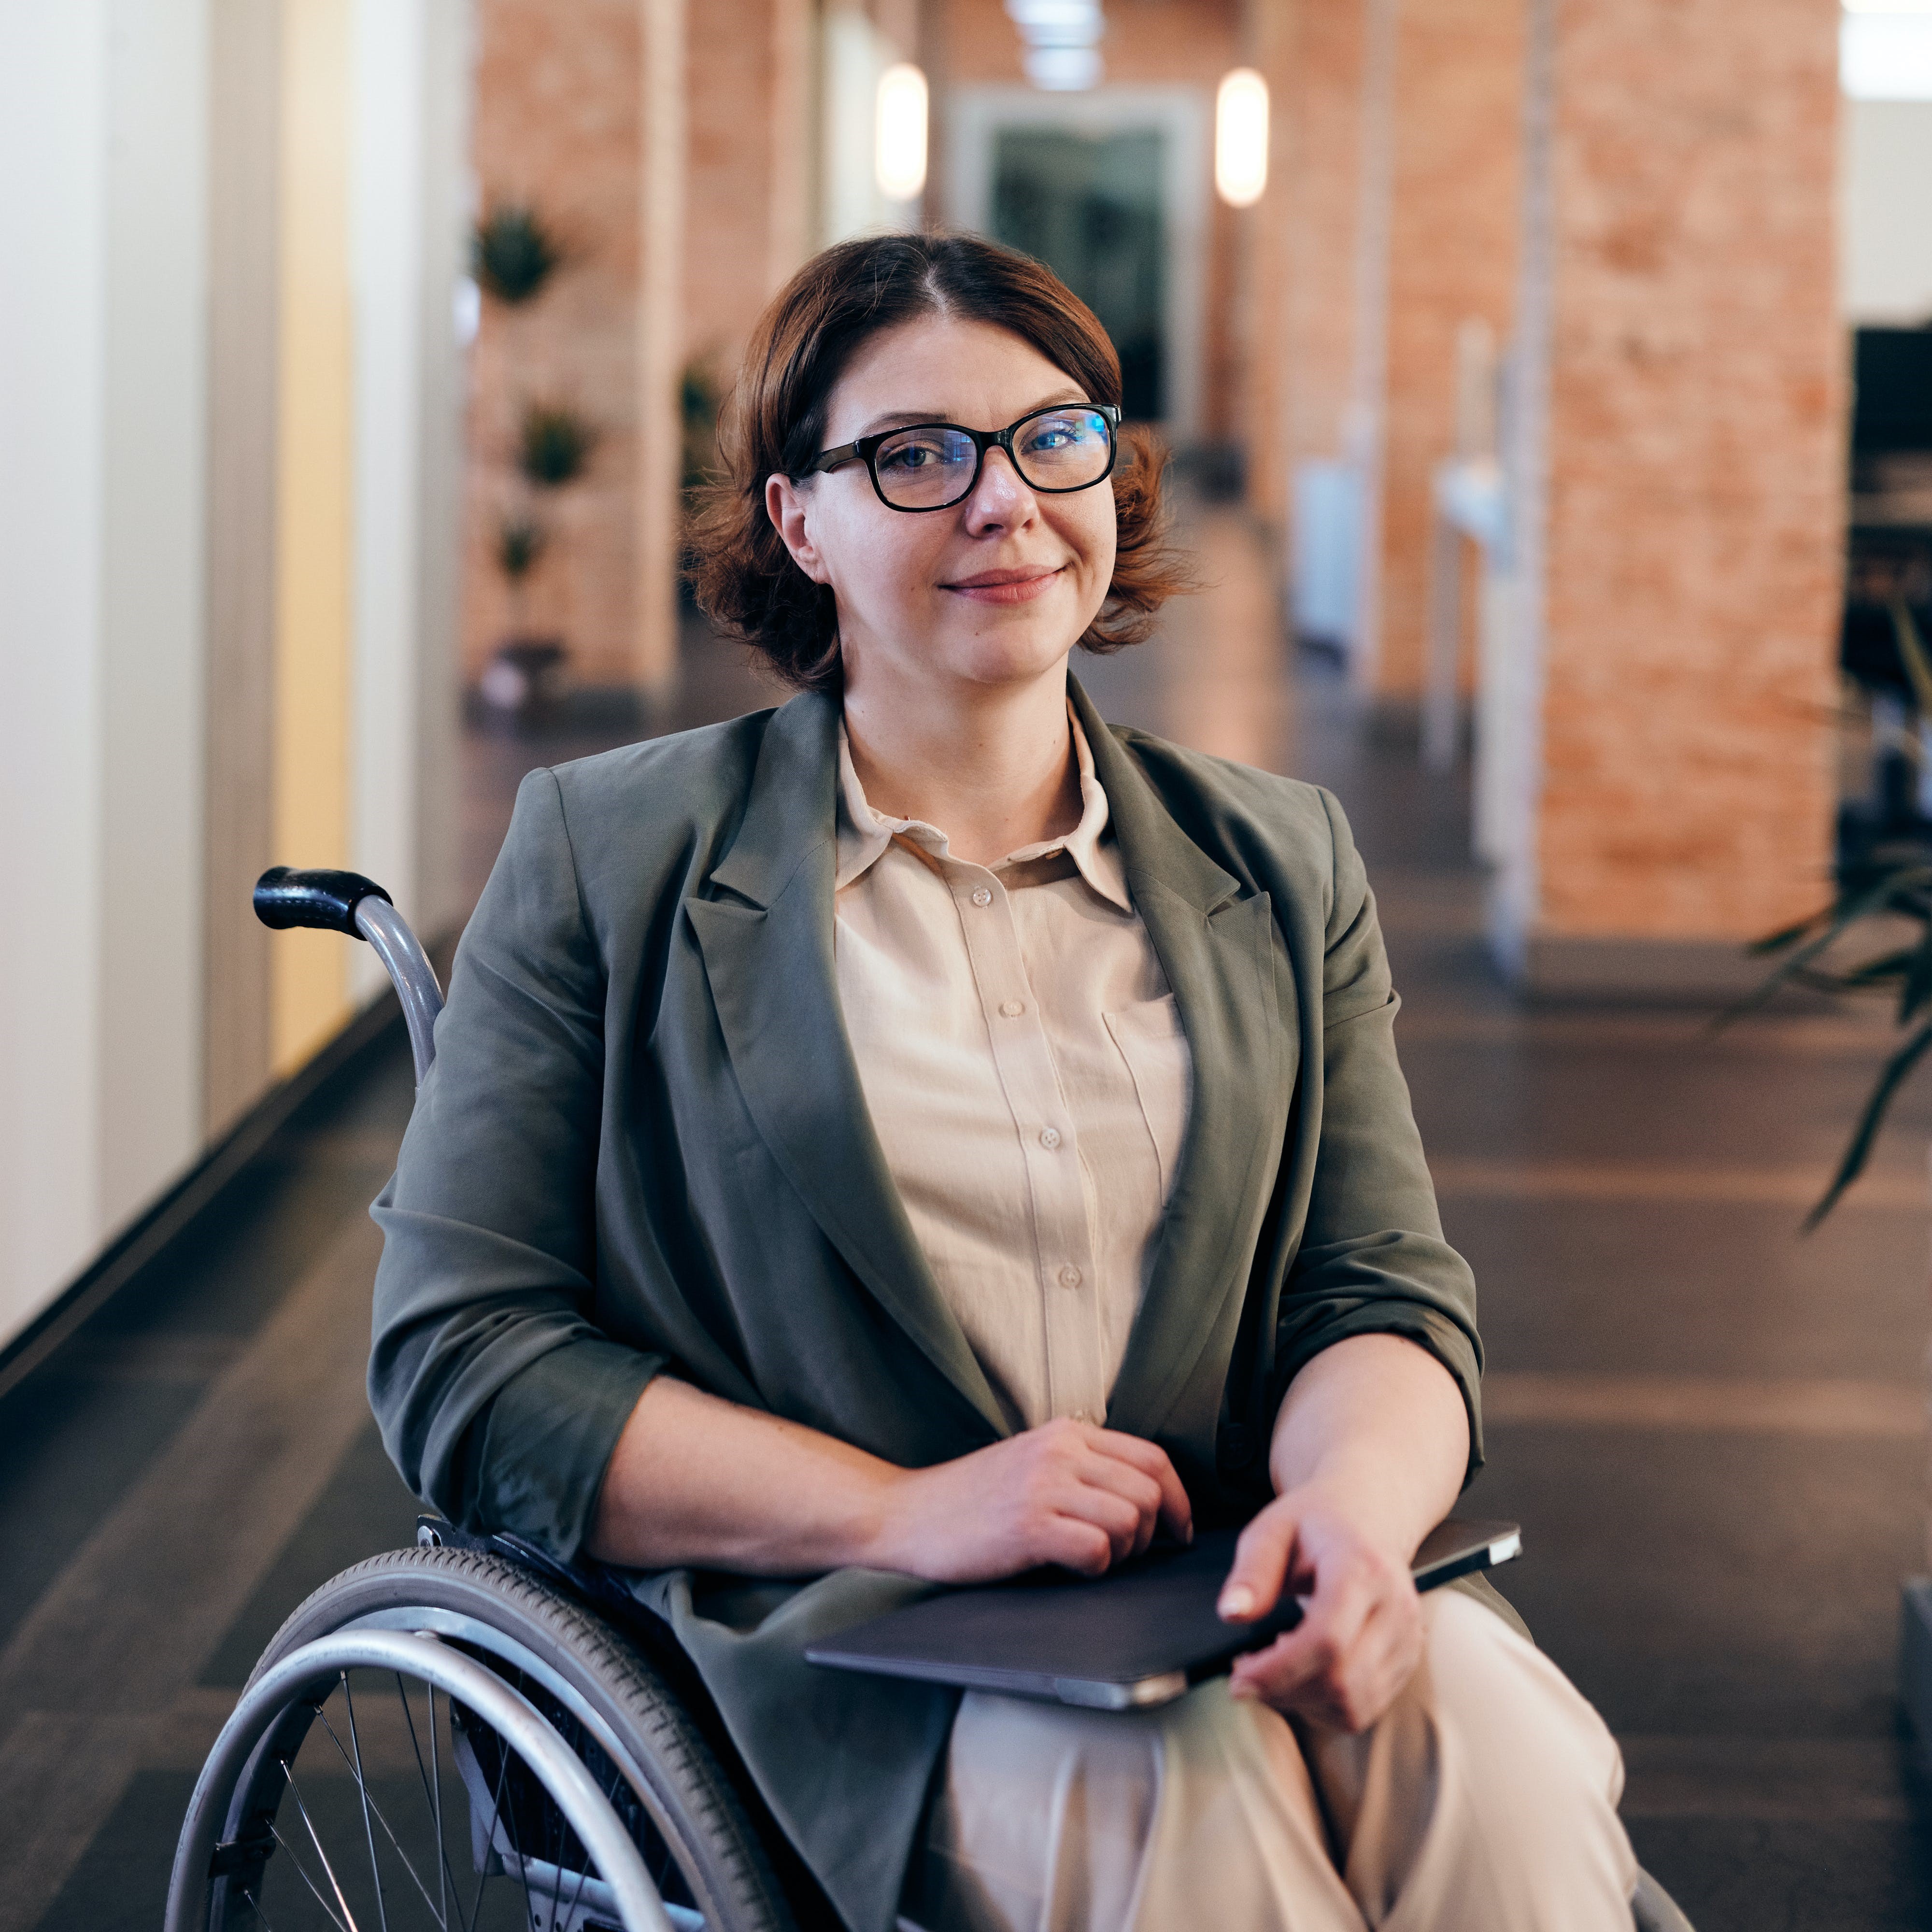 Fotografia de una mujer en silla de ruedas con notebook sobre las piernas en un ambiente laboral